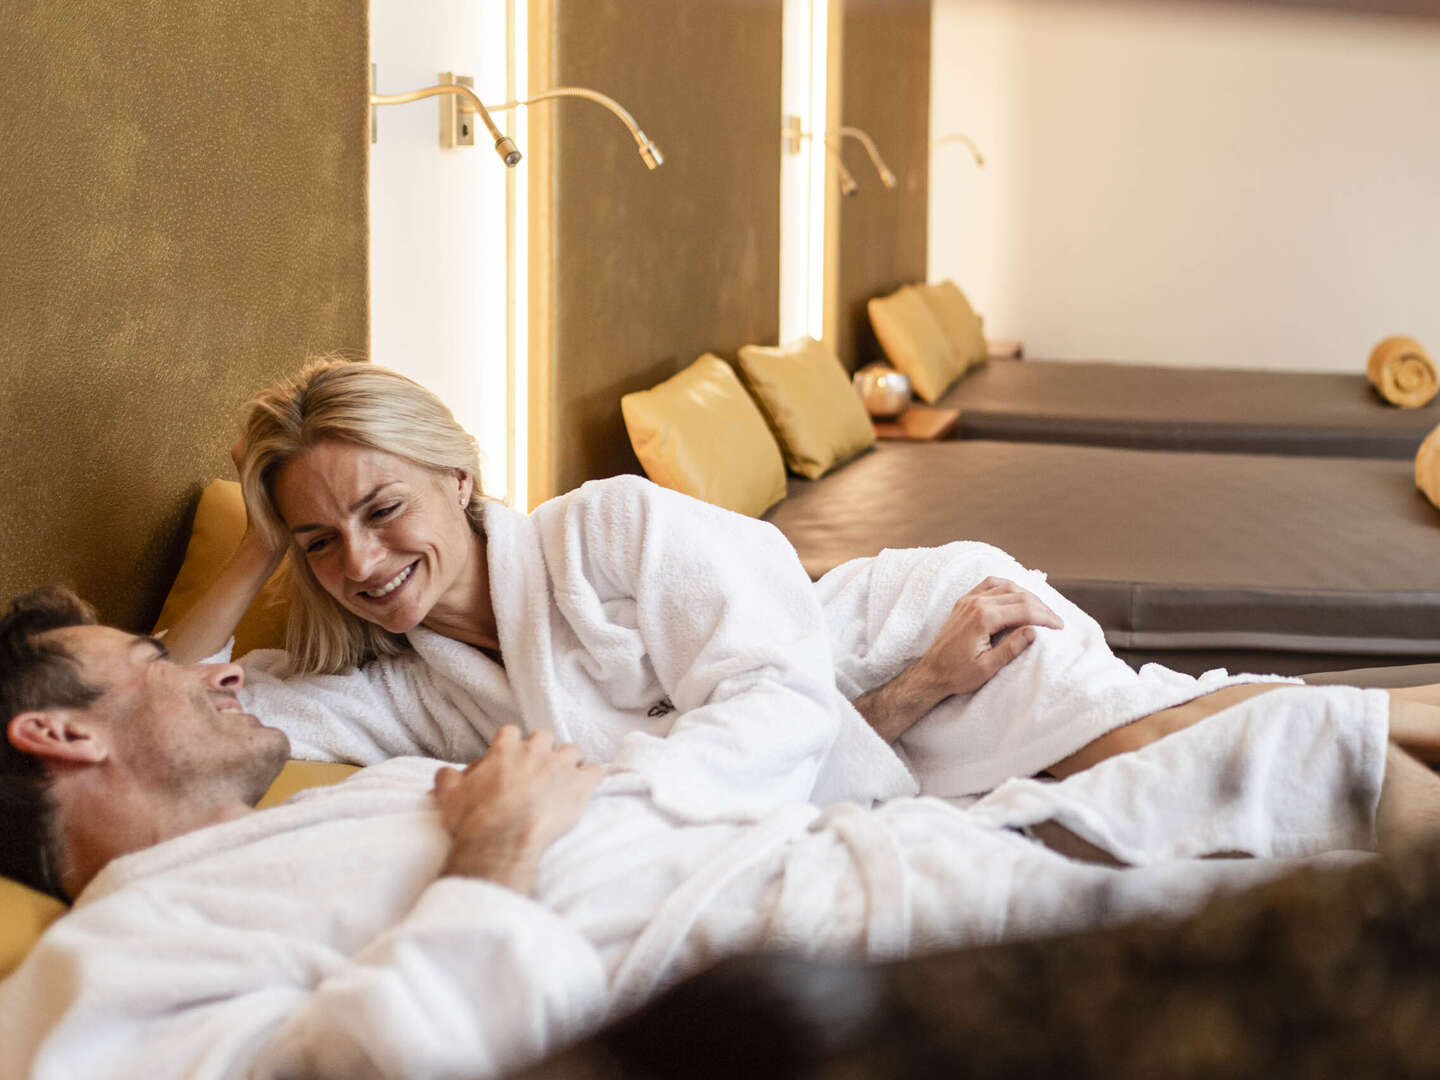 Zeit zu zweit im italienischen Romantik Hotel | 2 Nächte